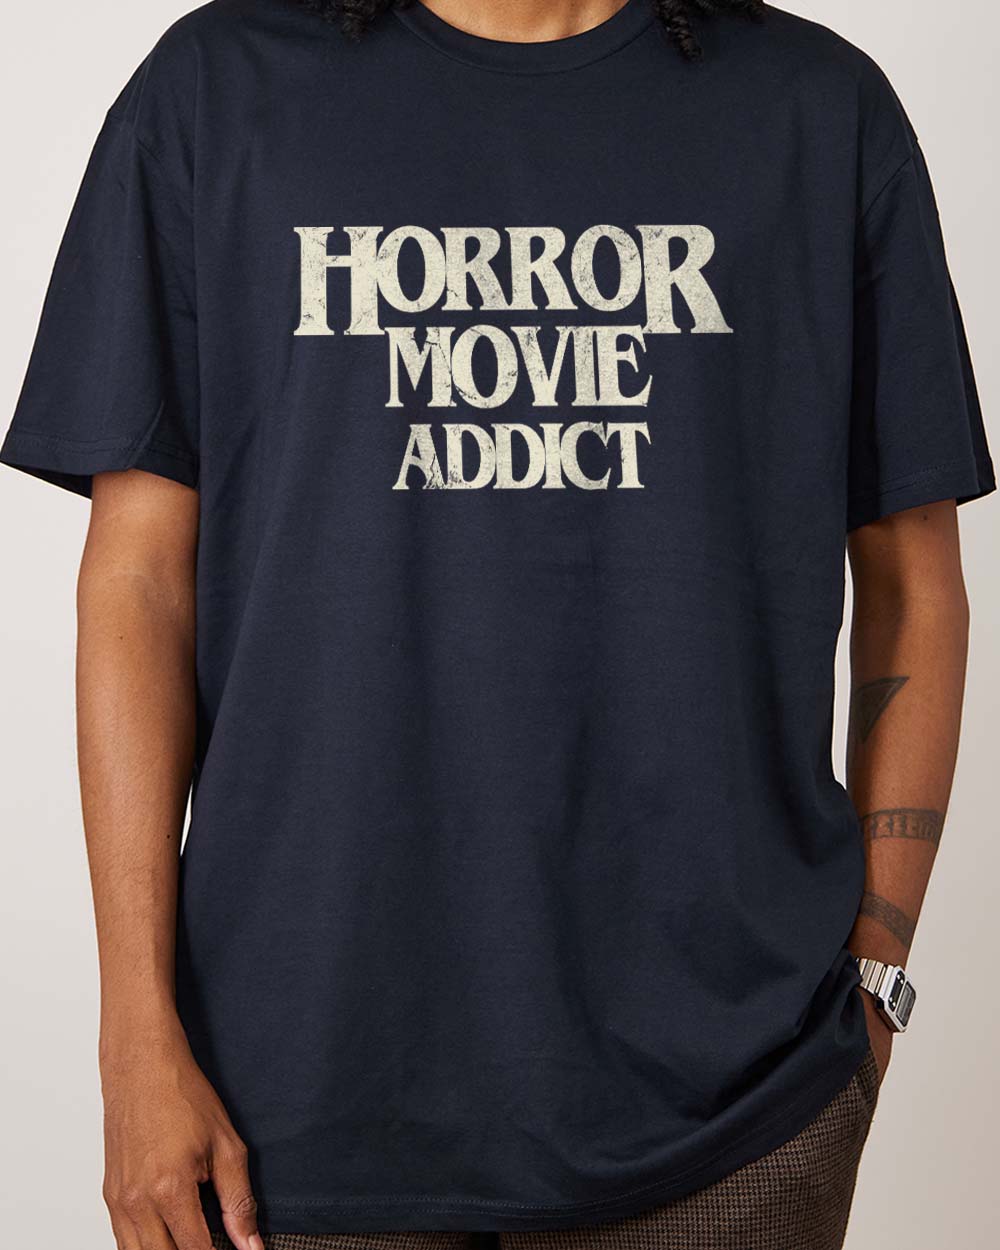 Horror Movie Addict T-Shirt Europe Online Navy